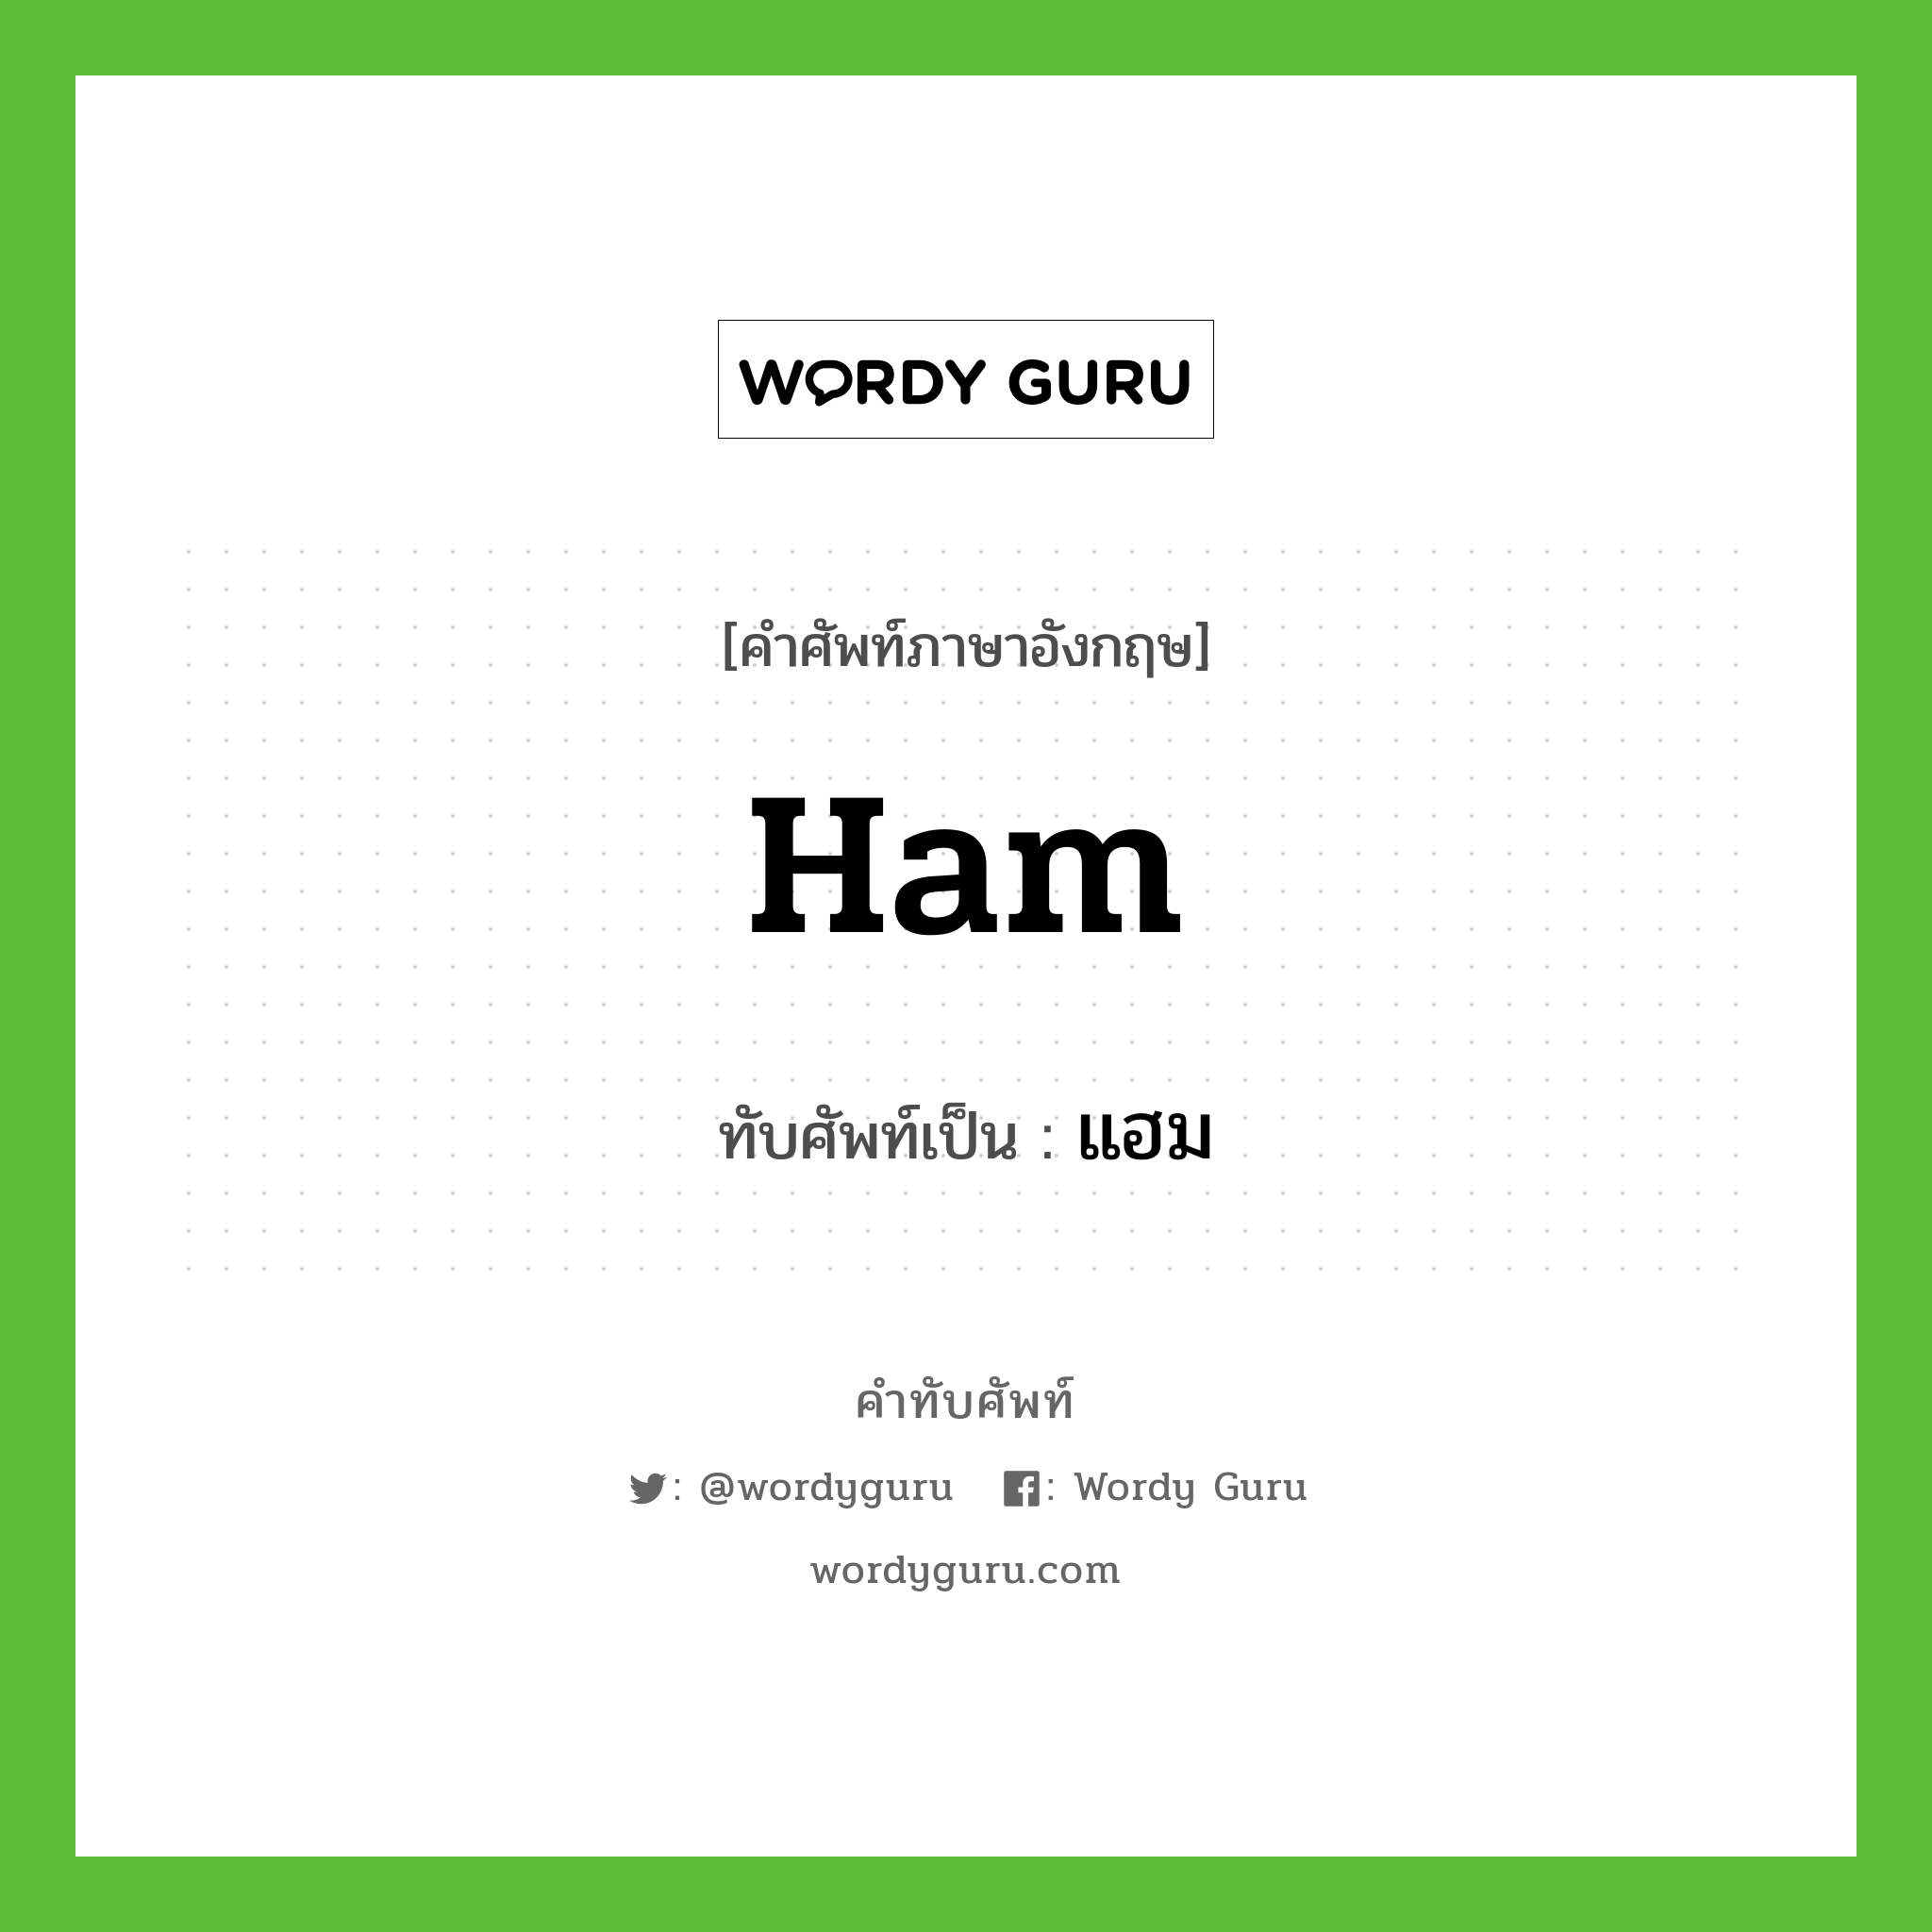 ham เขียนเป็นคำไทยว่าอะไร?, คำศัพท์ภาษาอังกฤษ ham ทับศัพท์เป็น แฮม